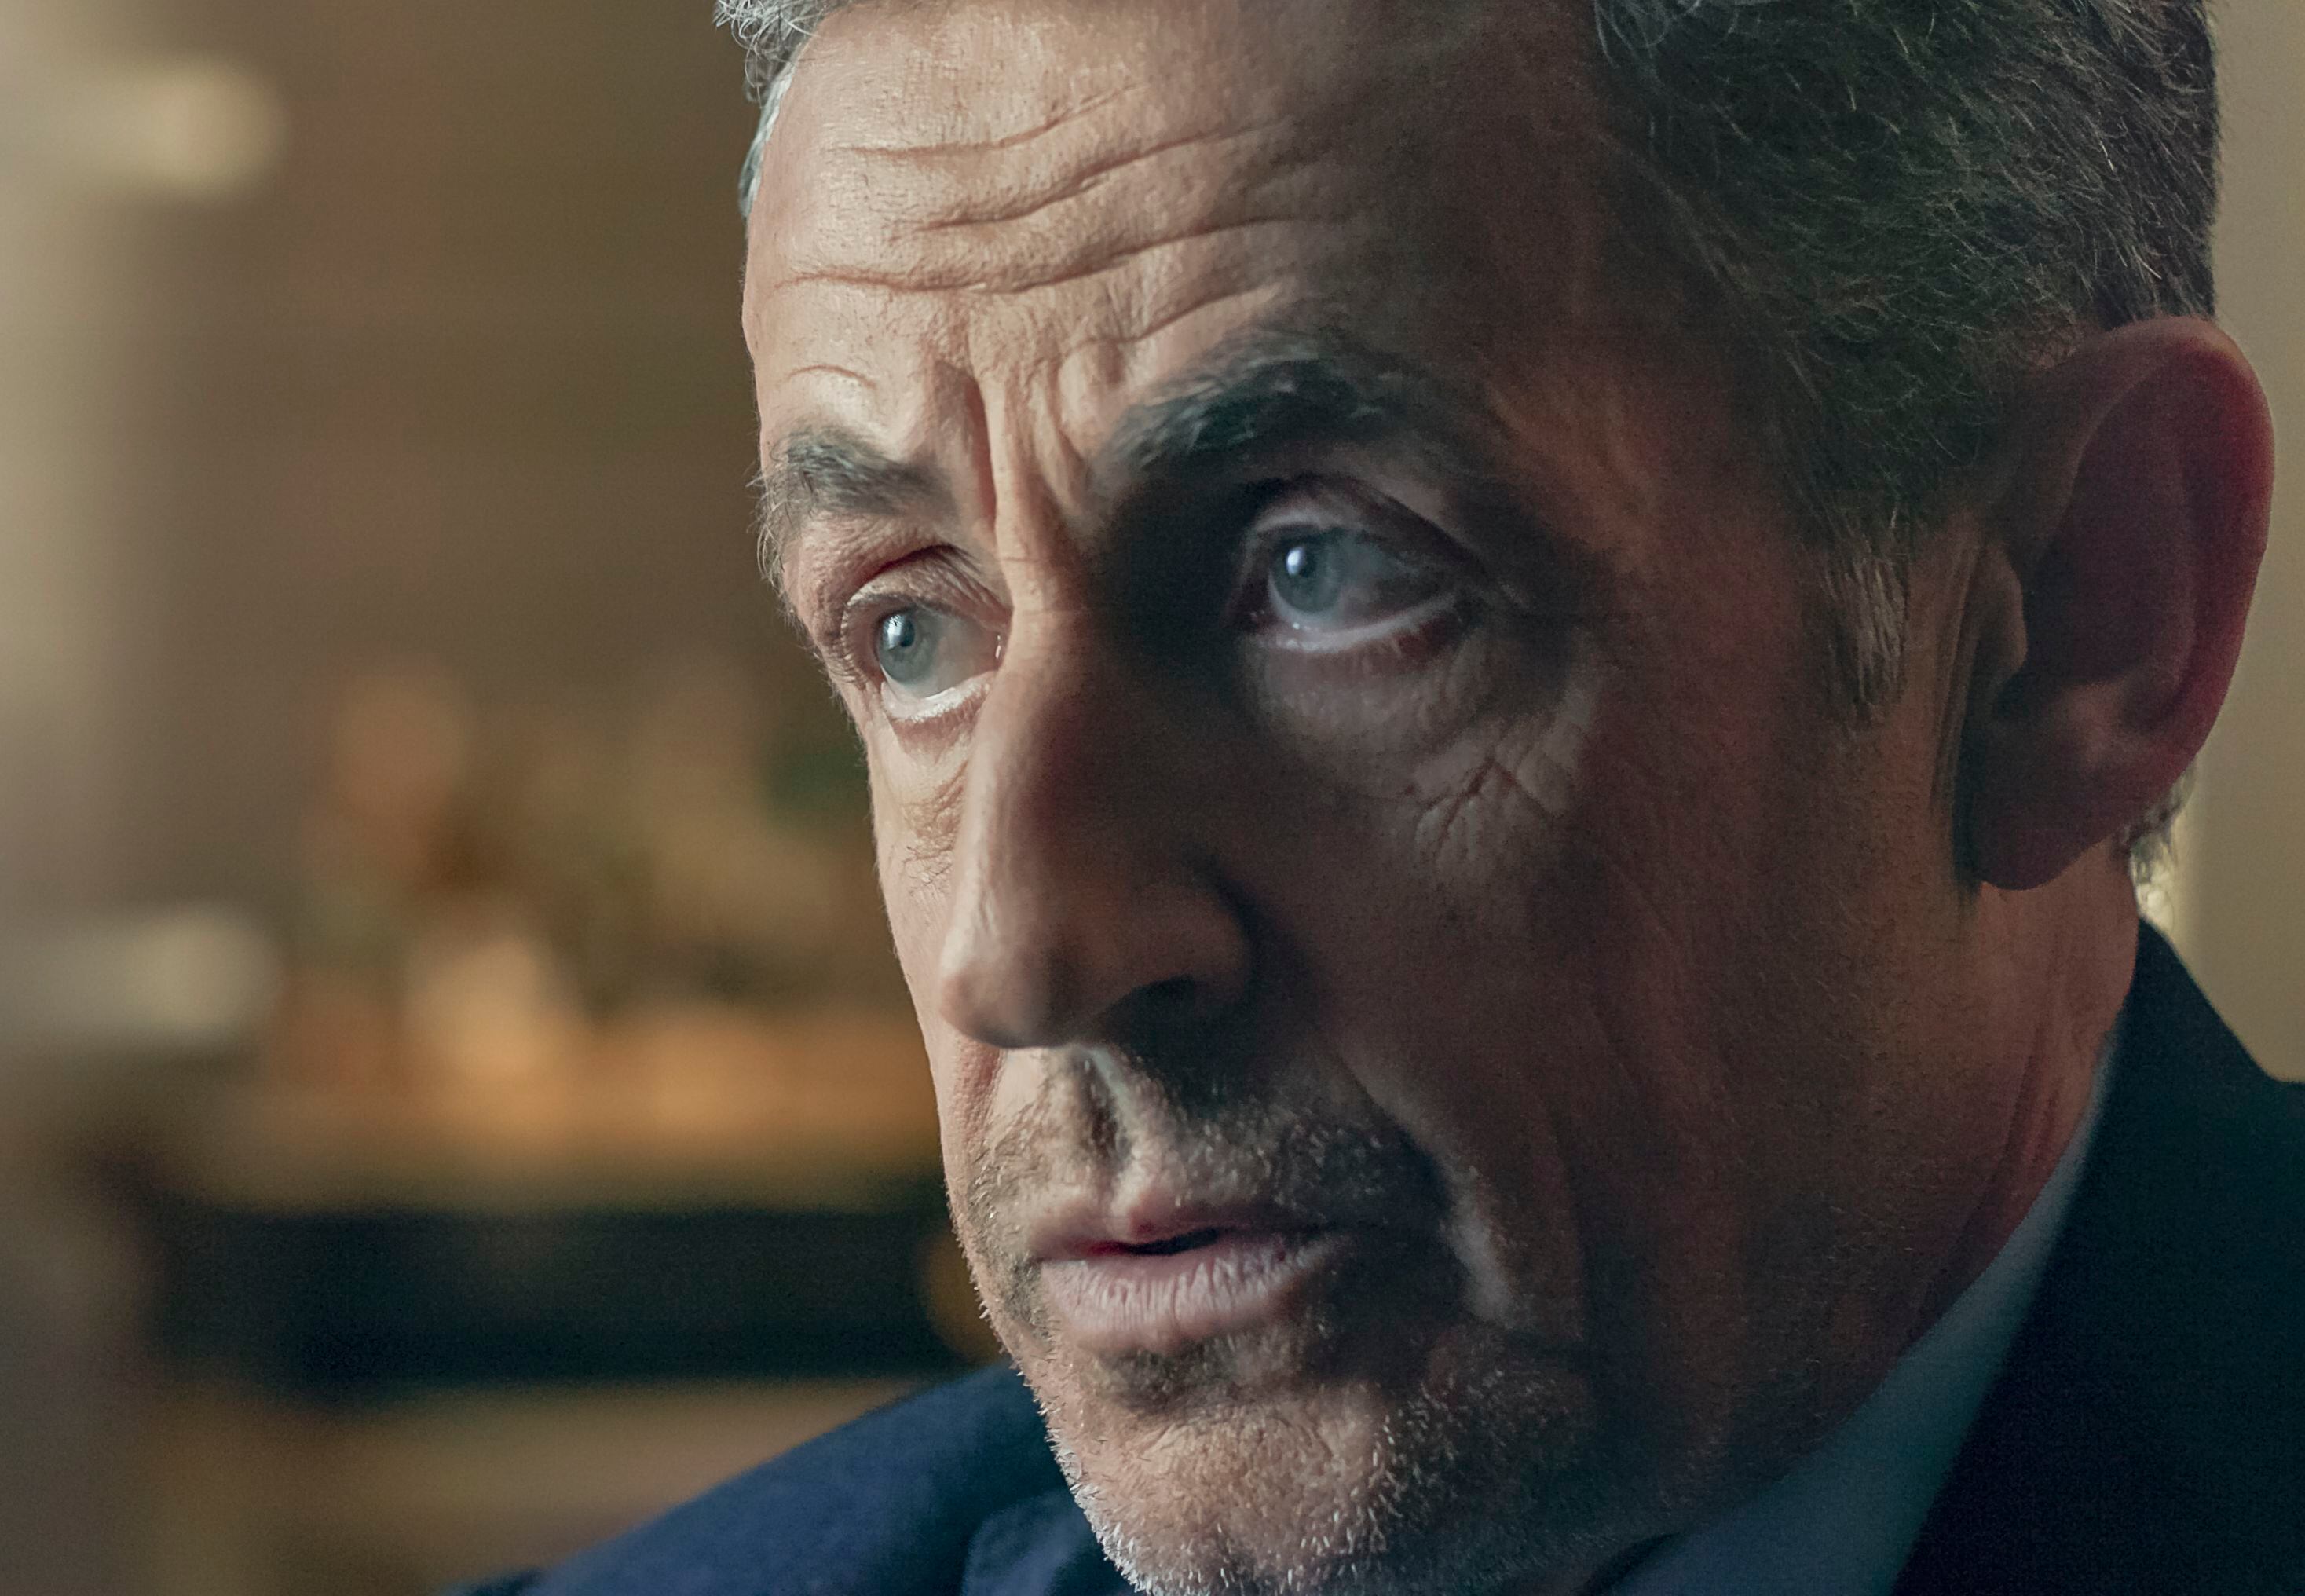 Nicolas Sarkozy, presidente de Francia entre 2007 y 2012, en un fotograma del documental.